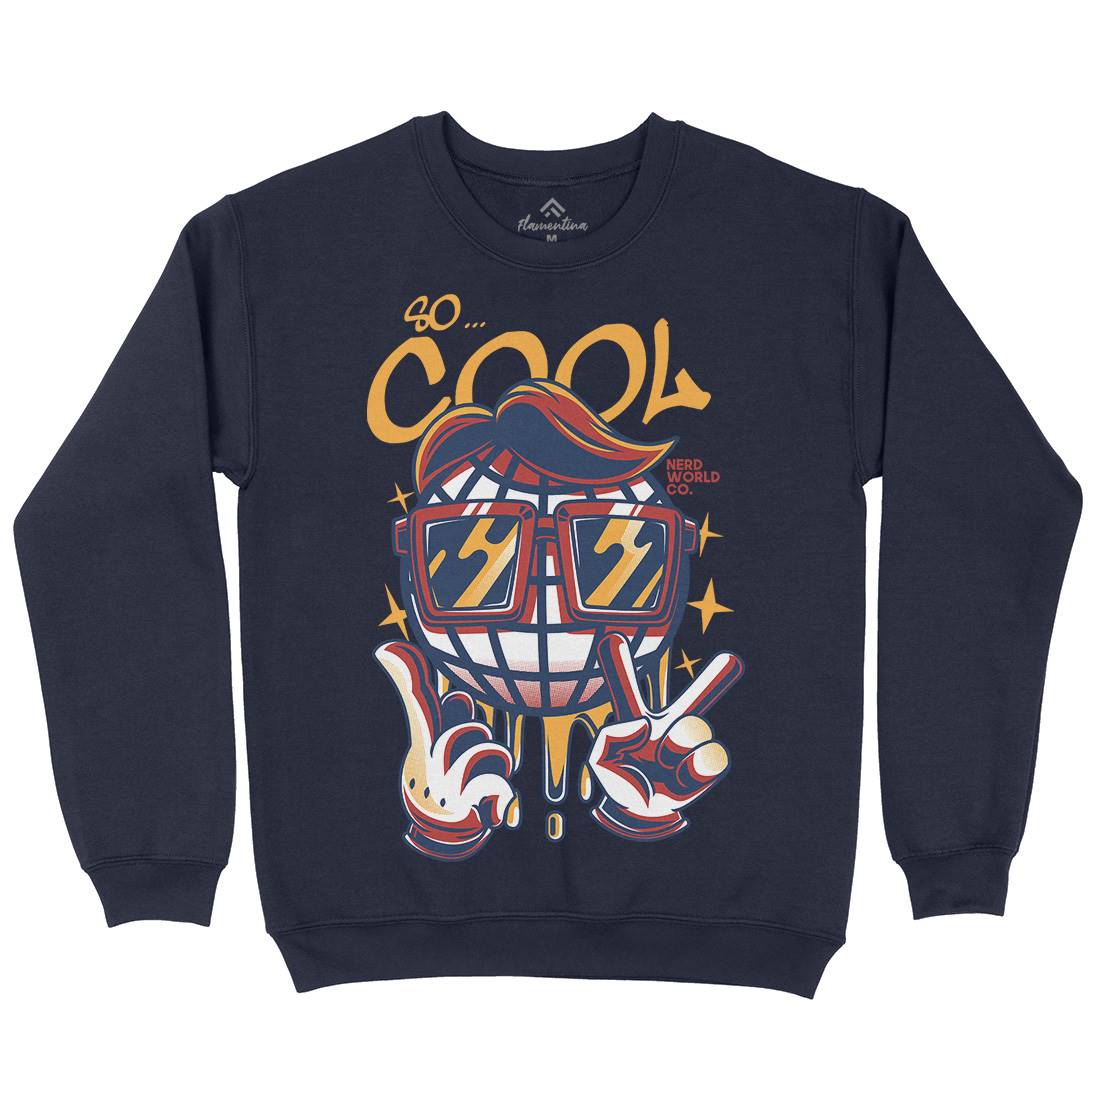 So Cool Kids Crew Neck Sweatshirt Geek D824